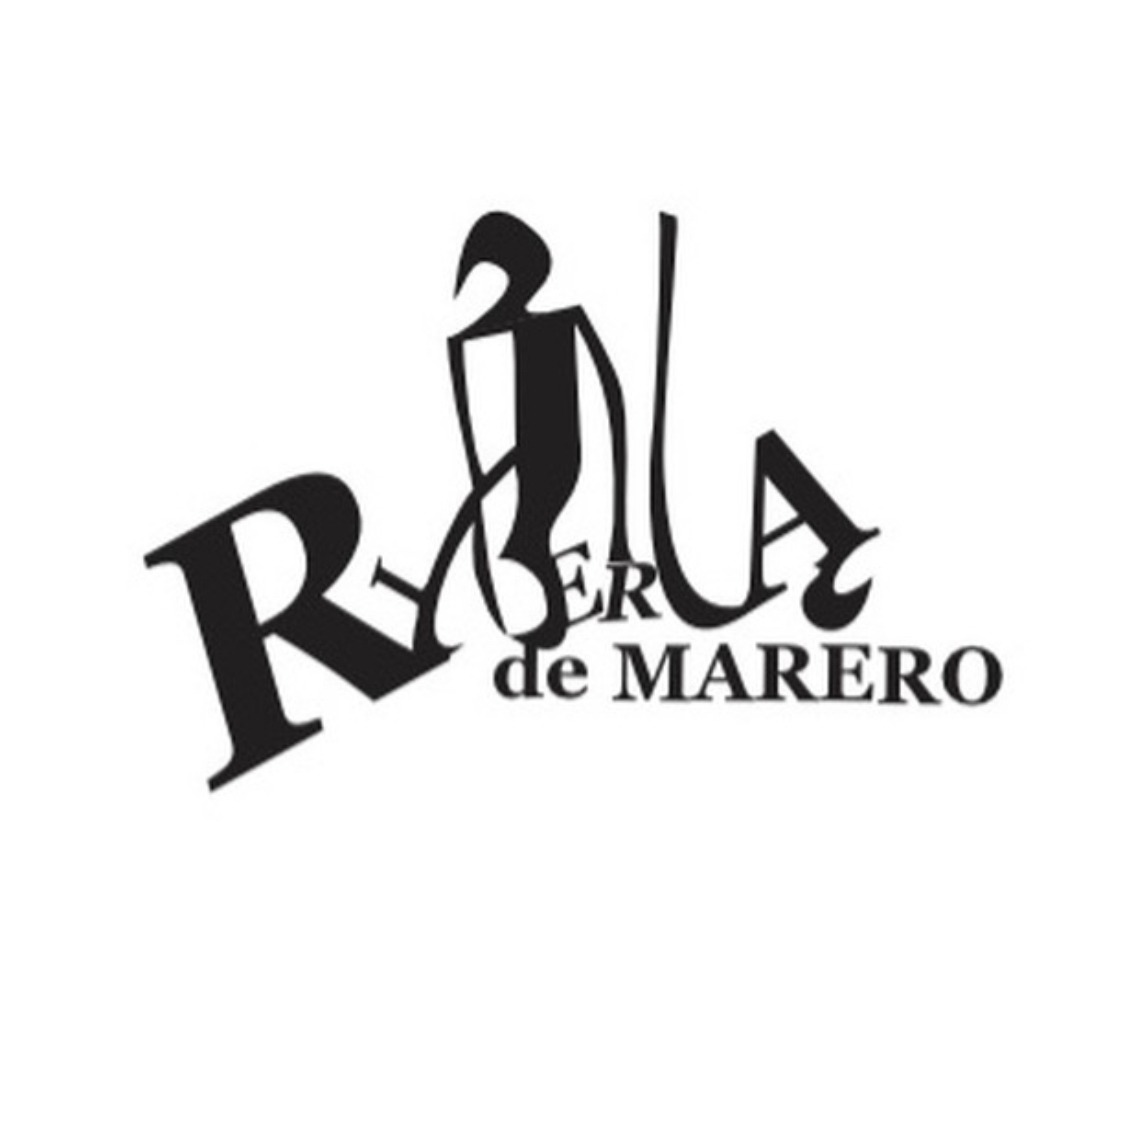 REBERA_de_MARERO